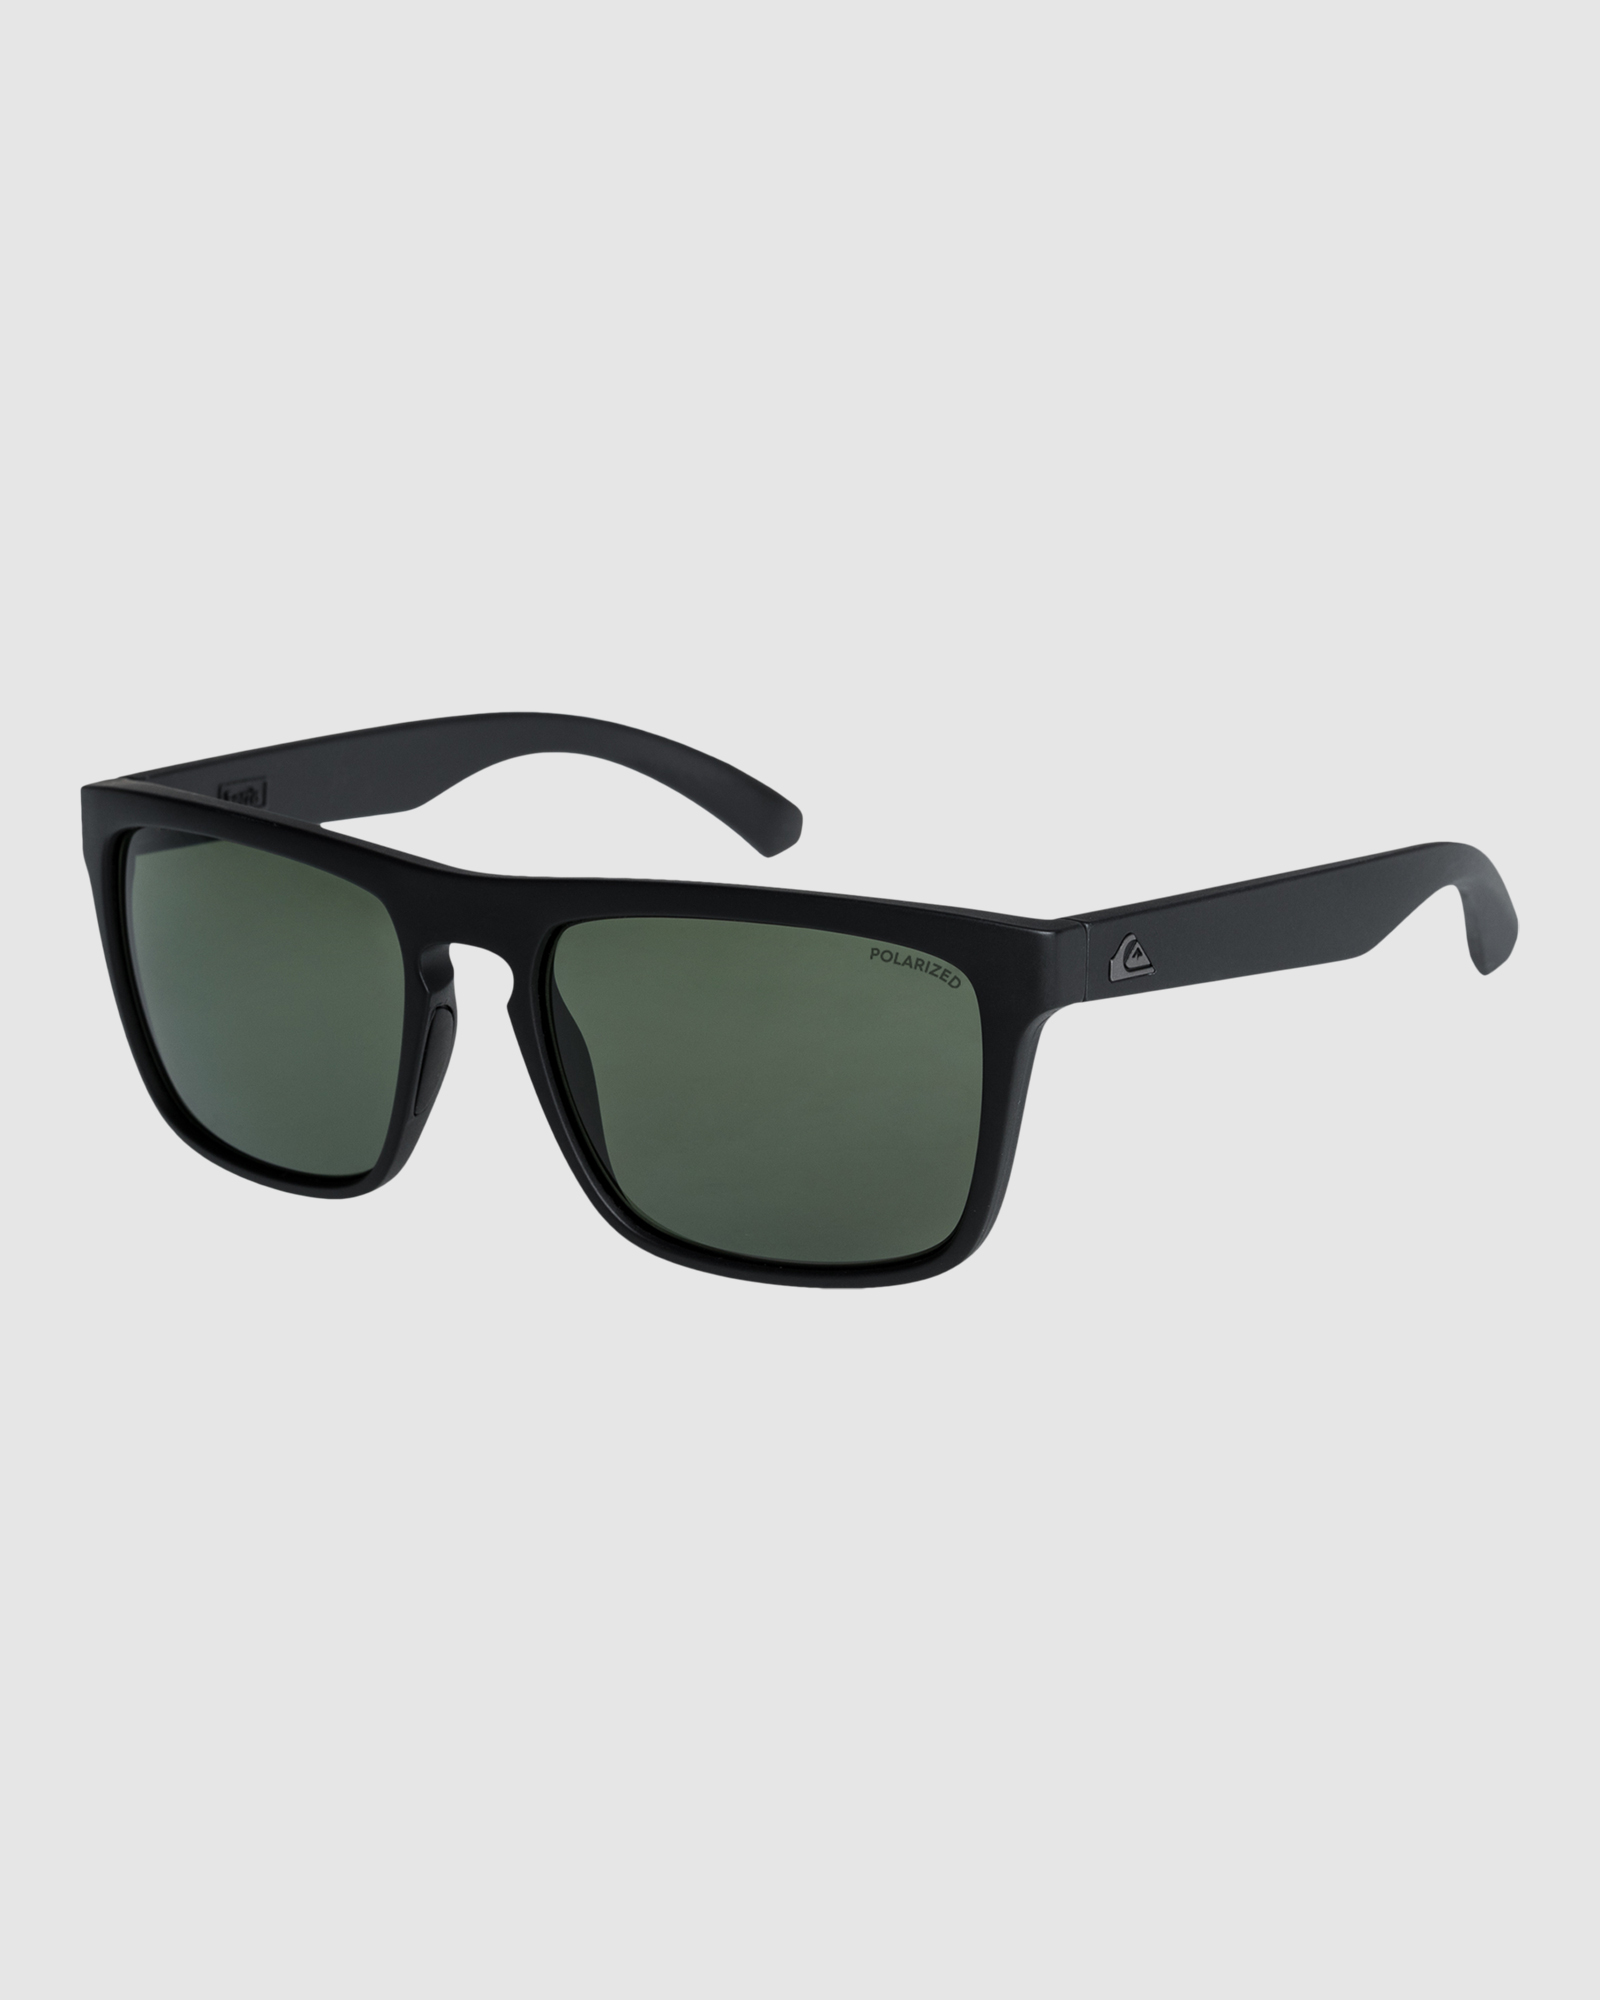 Ferris P - Polarised Sunglasses For Men